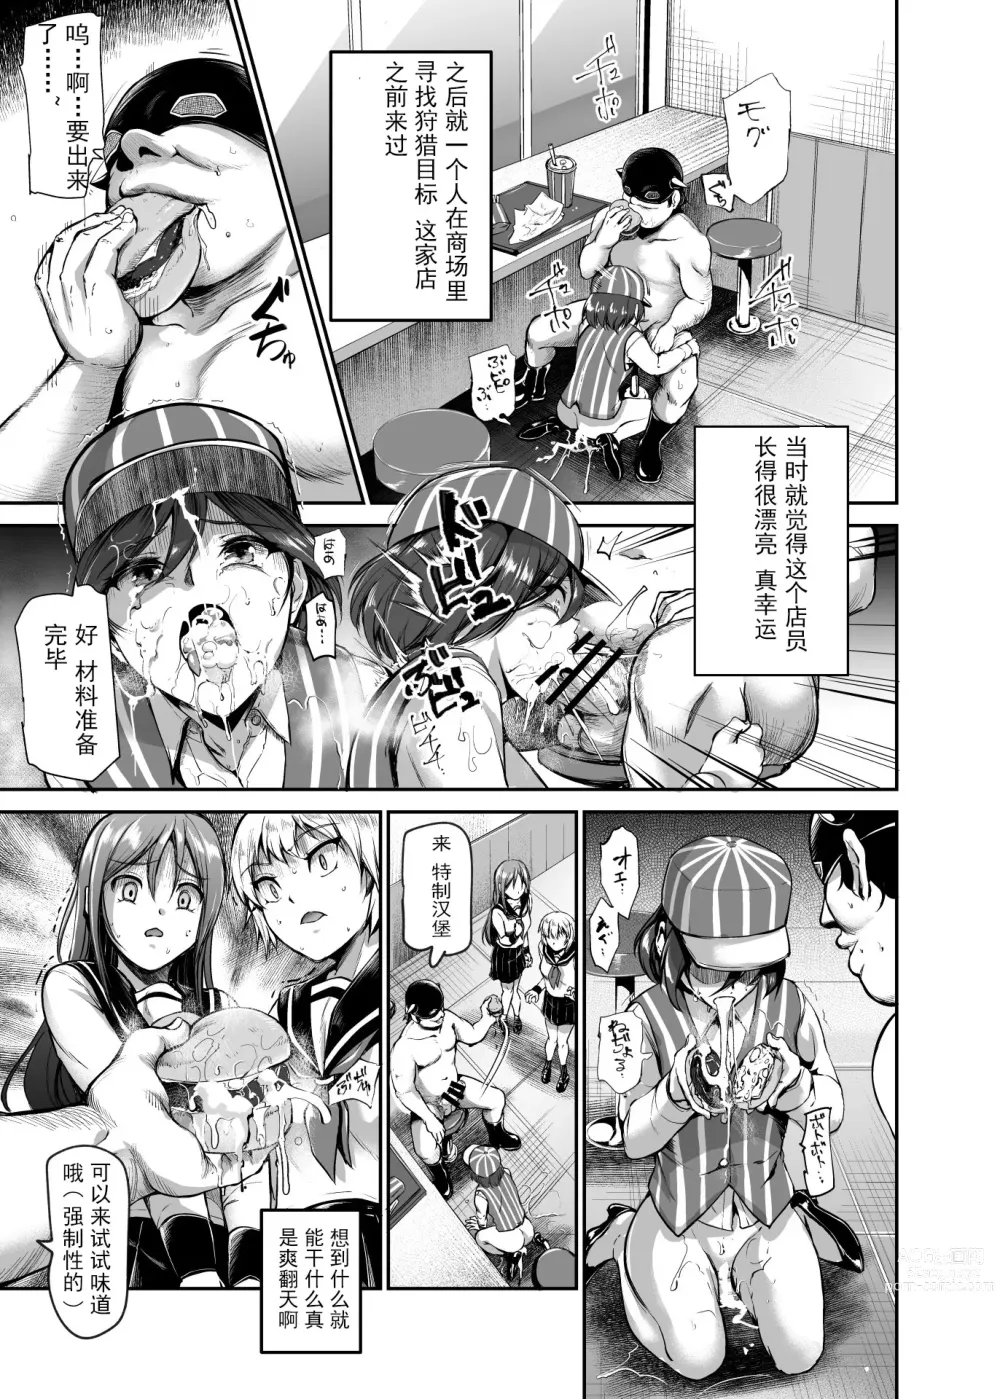 Page 13 of doujinshi 进入邪恶组织工作的话，就可以放肆享受女人性爱自助了吗?EX